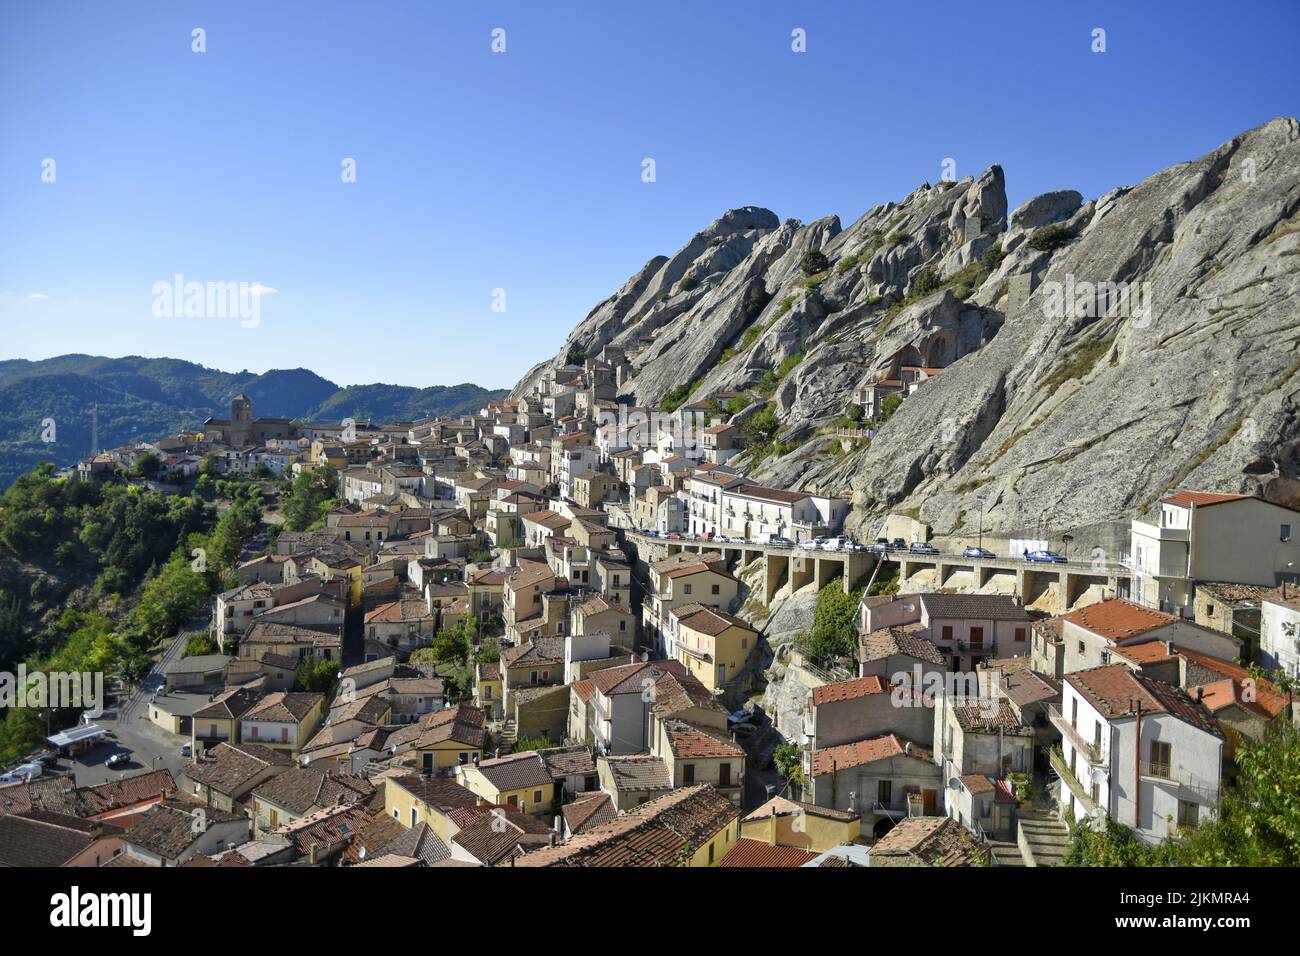 La vue panoramique de Pietrapertosa, un village situé dans les montagnes de la région de Basilicate, en Italie Banque D'Images